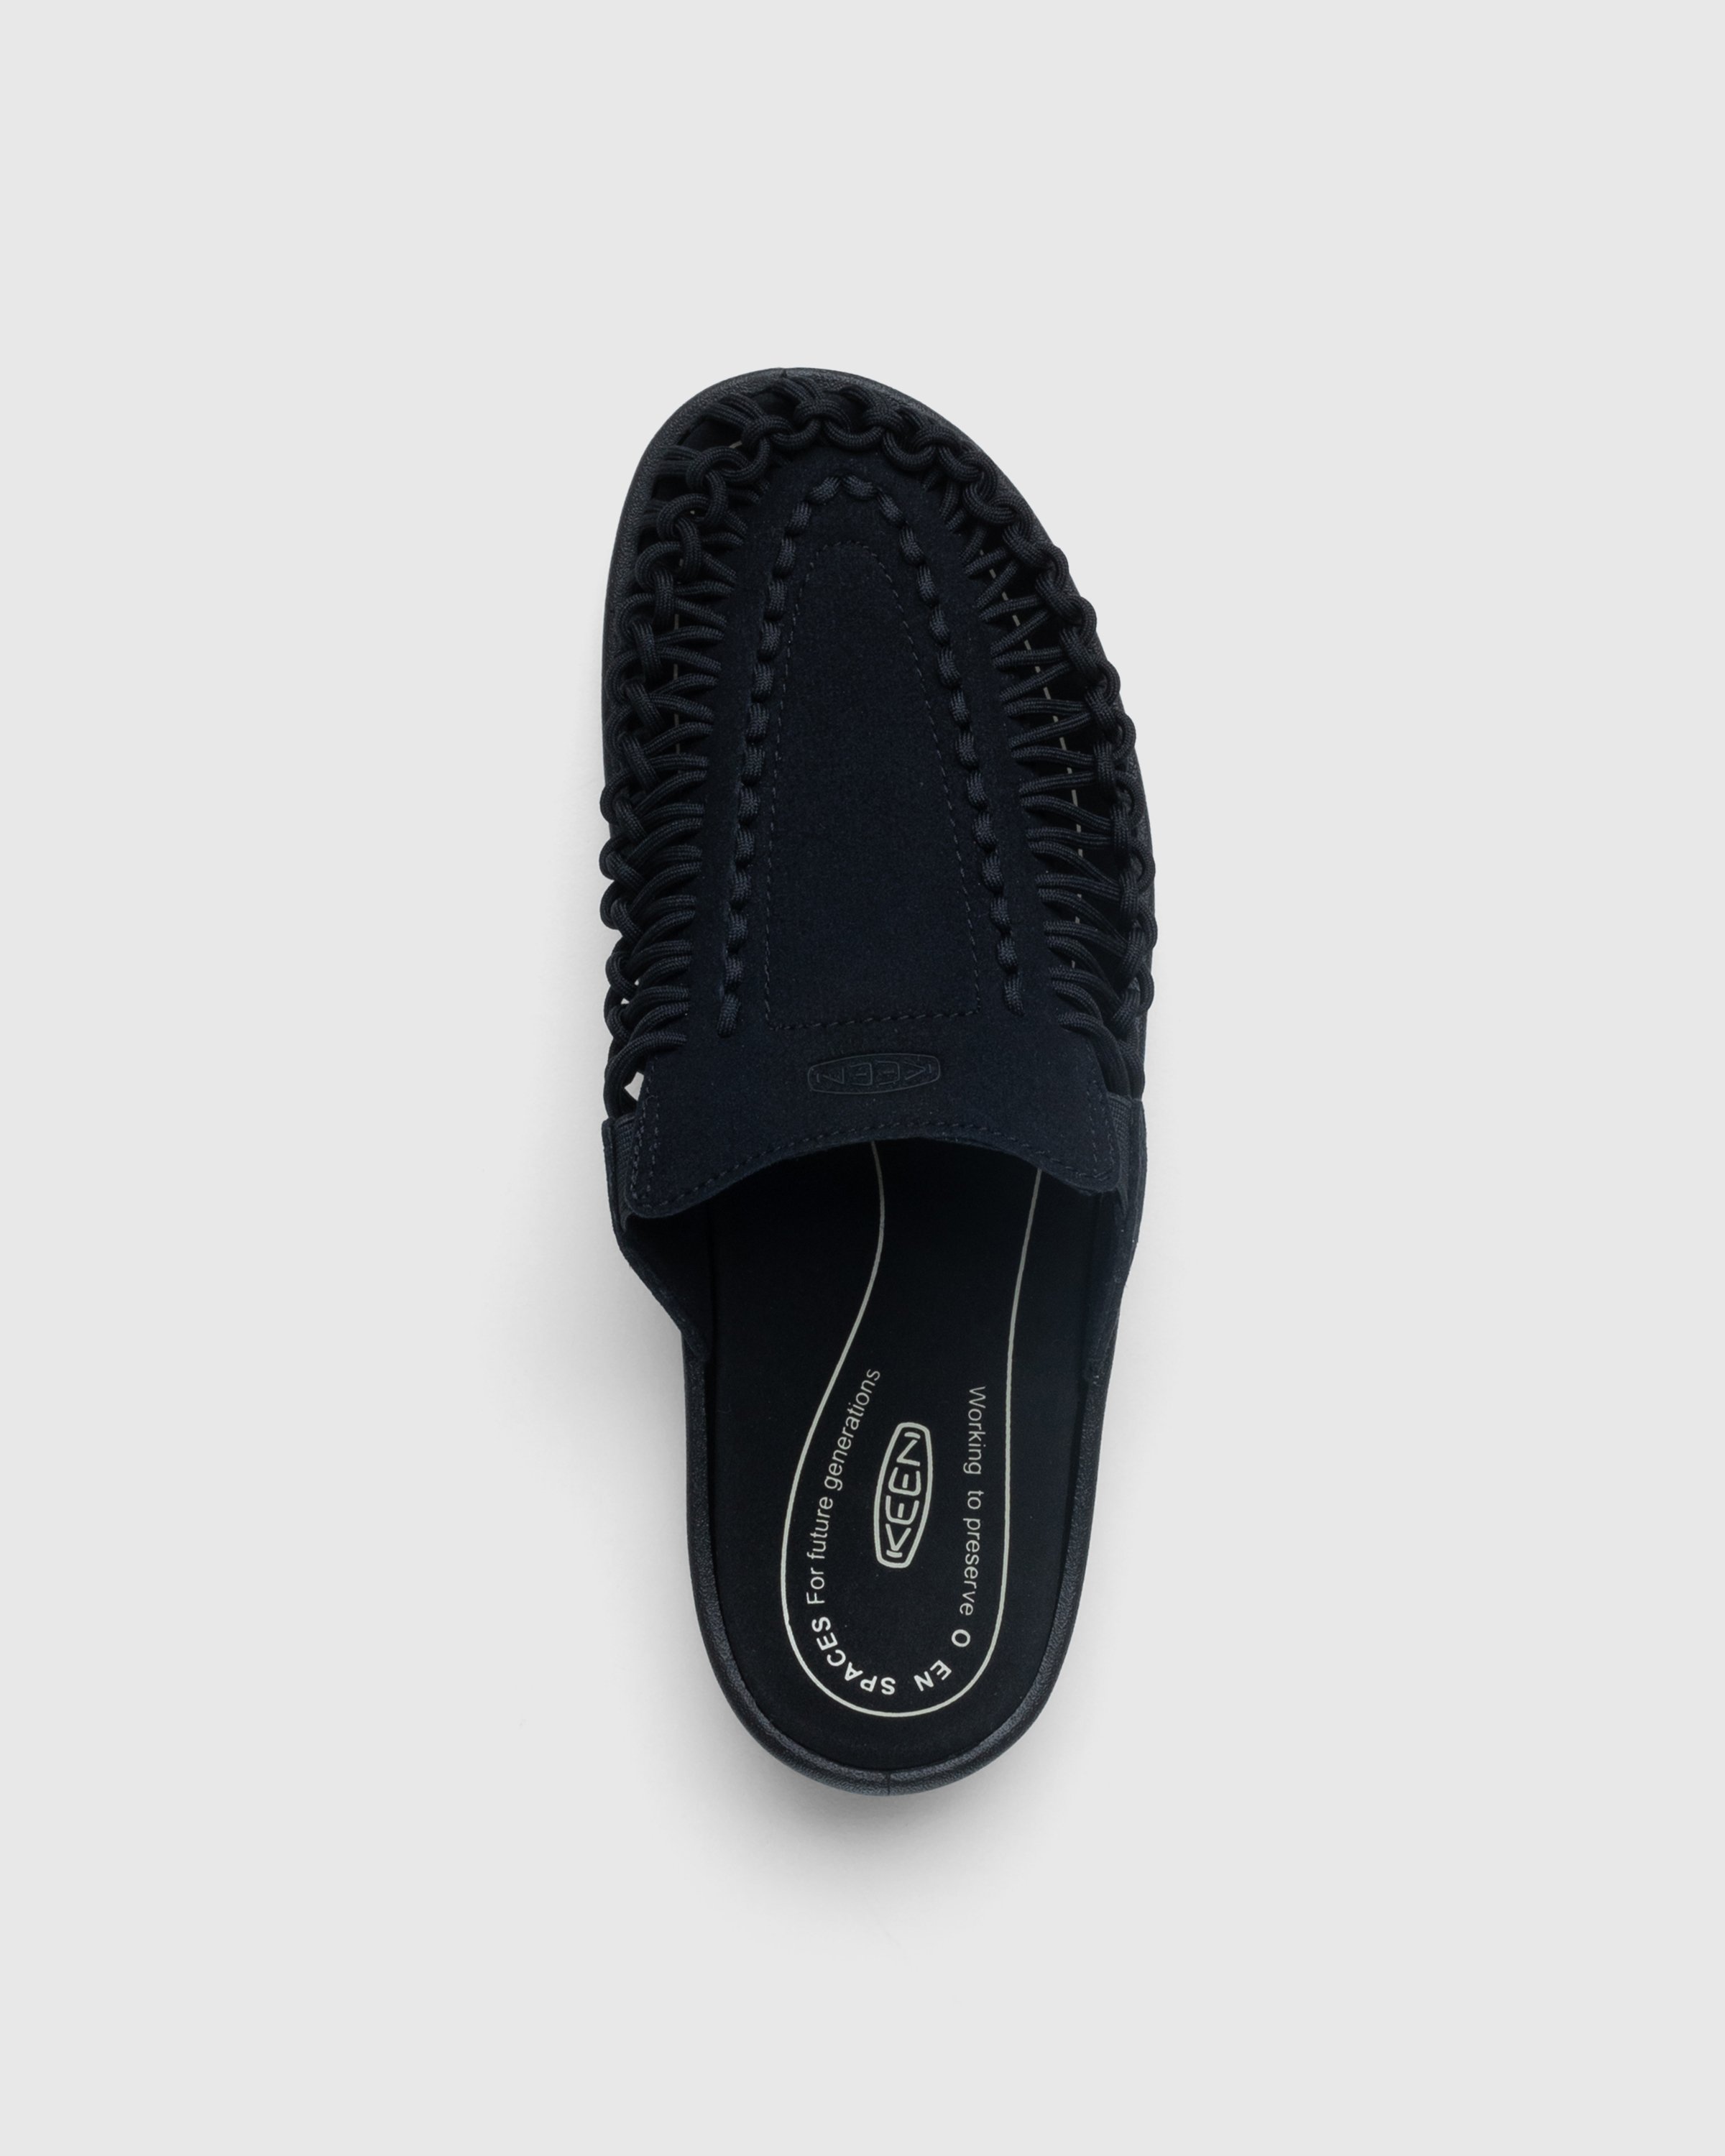 Keen - Uneek II Slide Black - Footwear - Black - Image 5